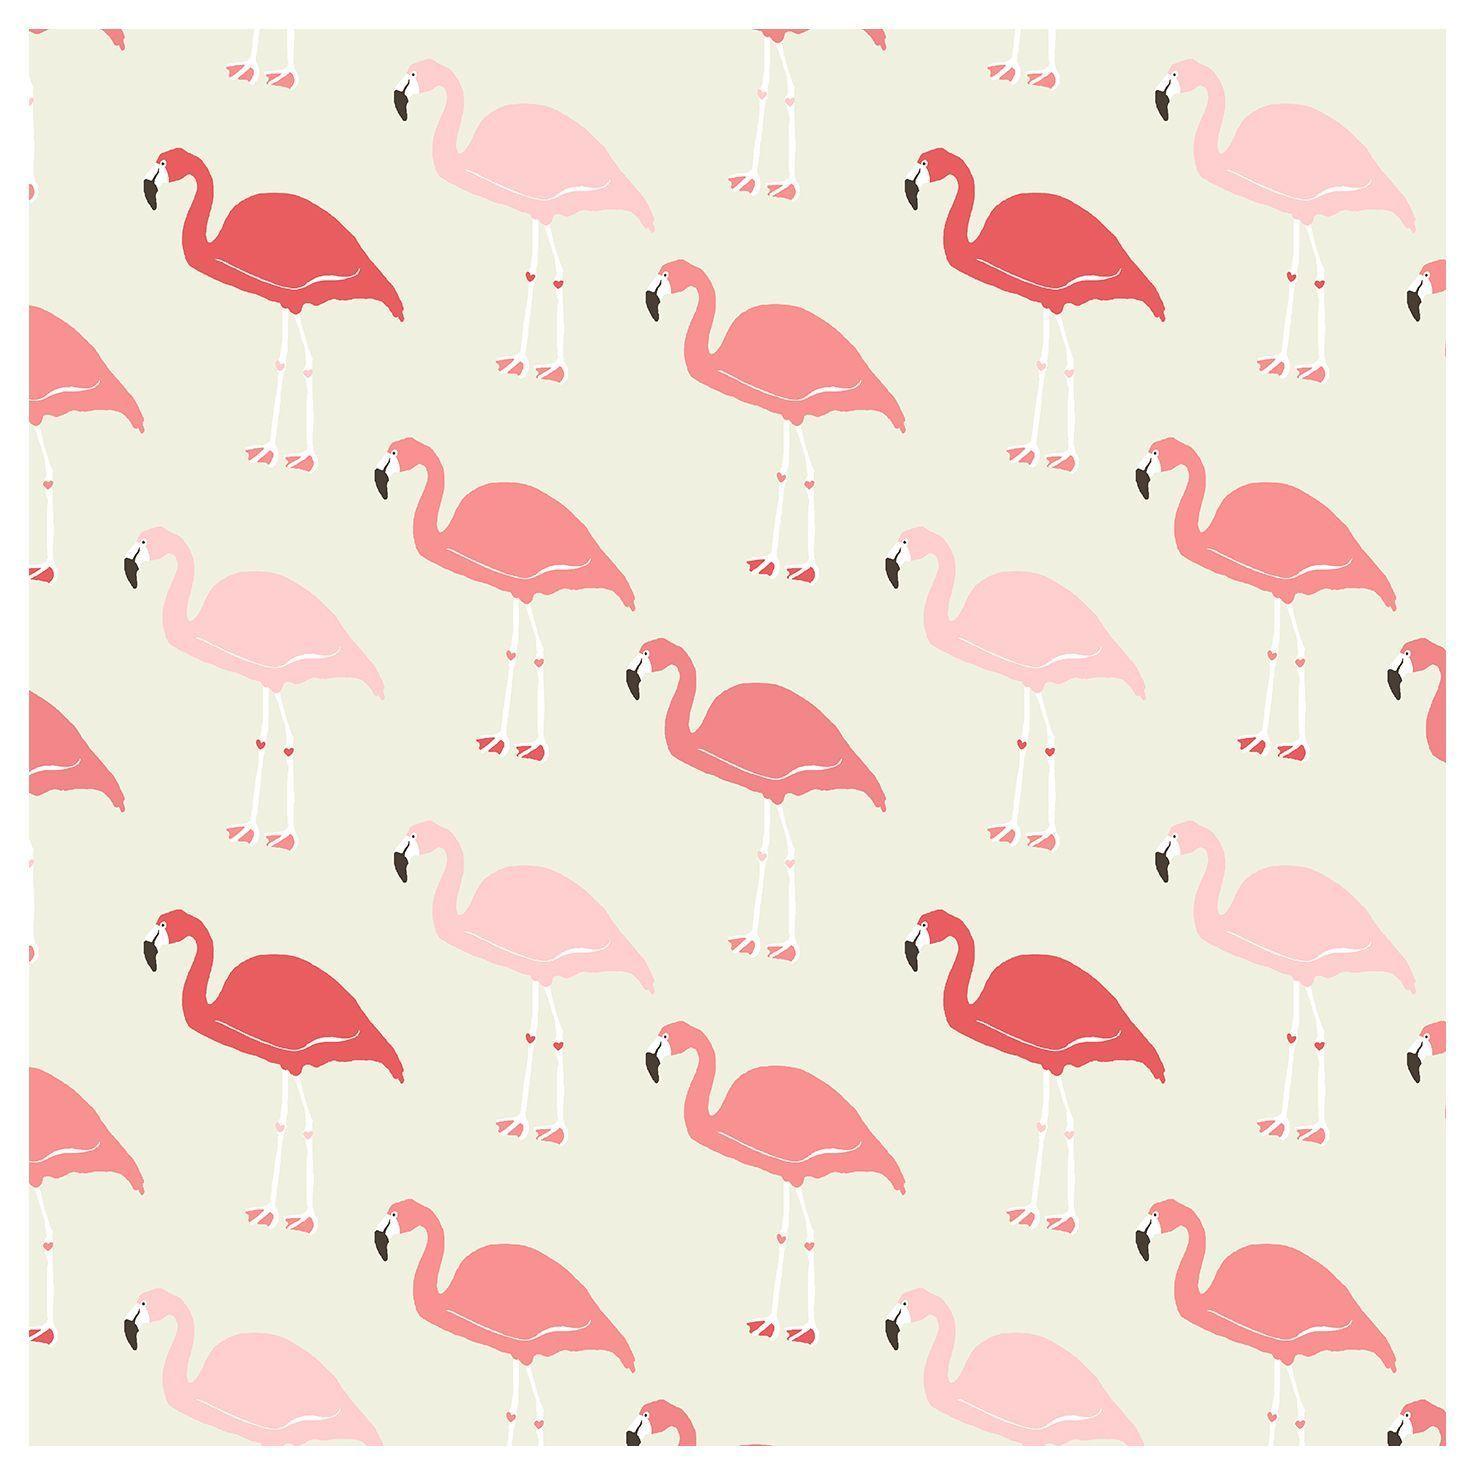 Fabulous Flamingo (id: 175269)